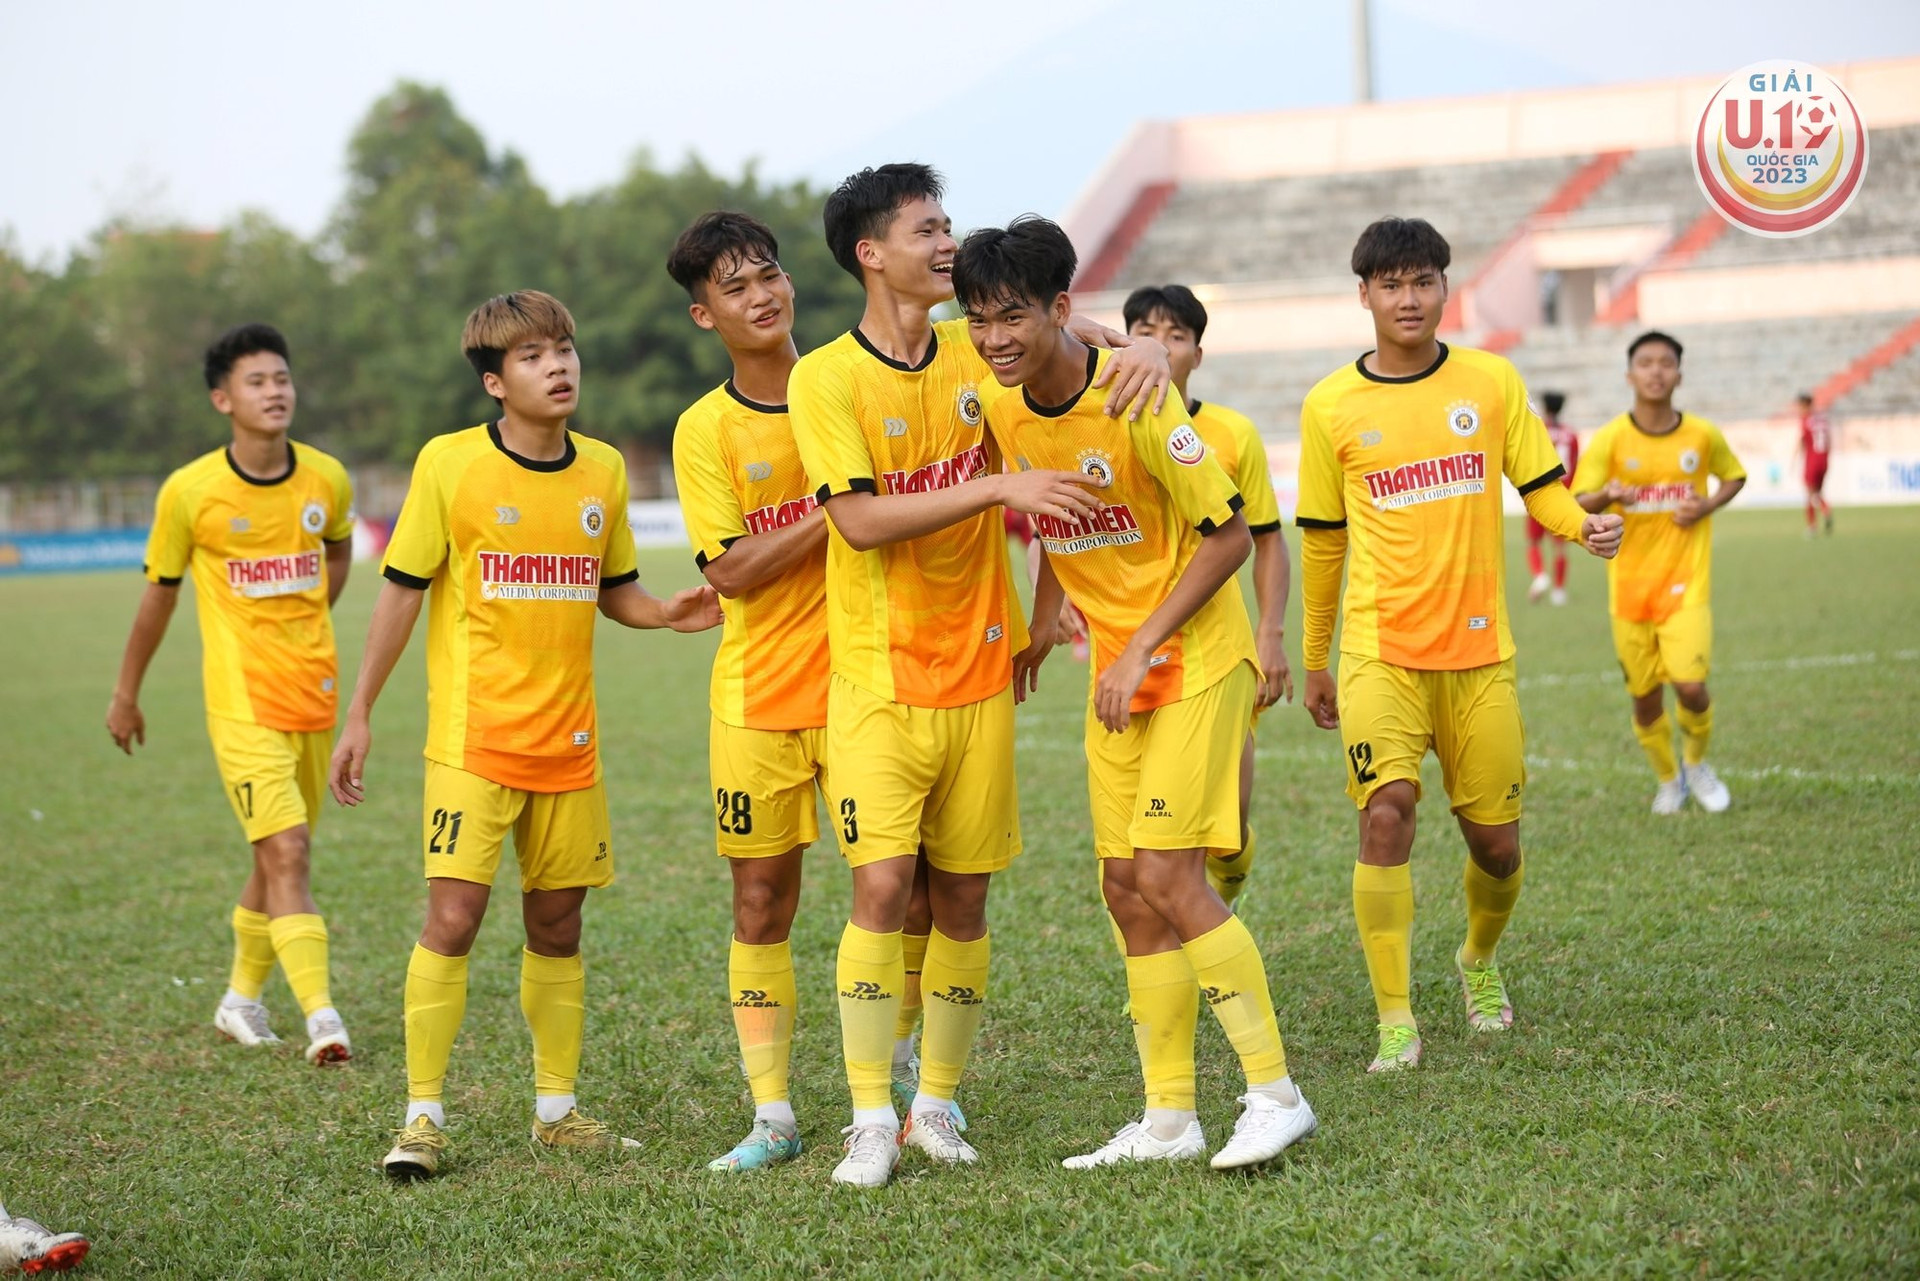 Thắng đậm Tây Ninh, Hà Nội chứng tỏ đẳng cấp nhà đương kim vô địch U.19 quốc gia